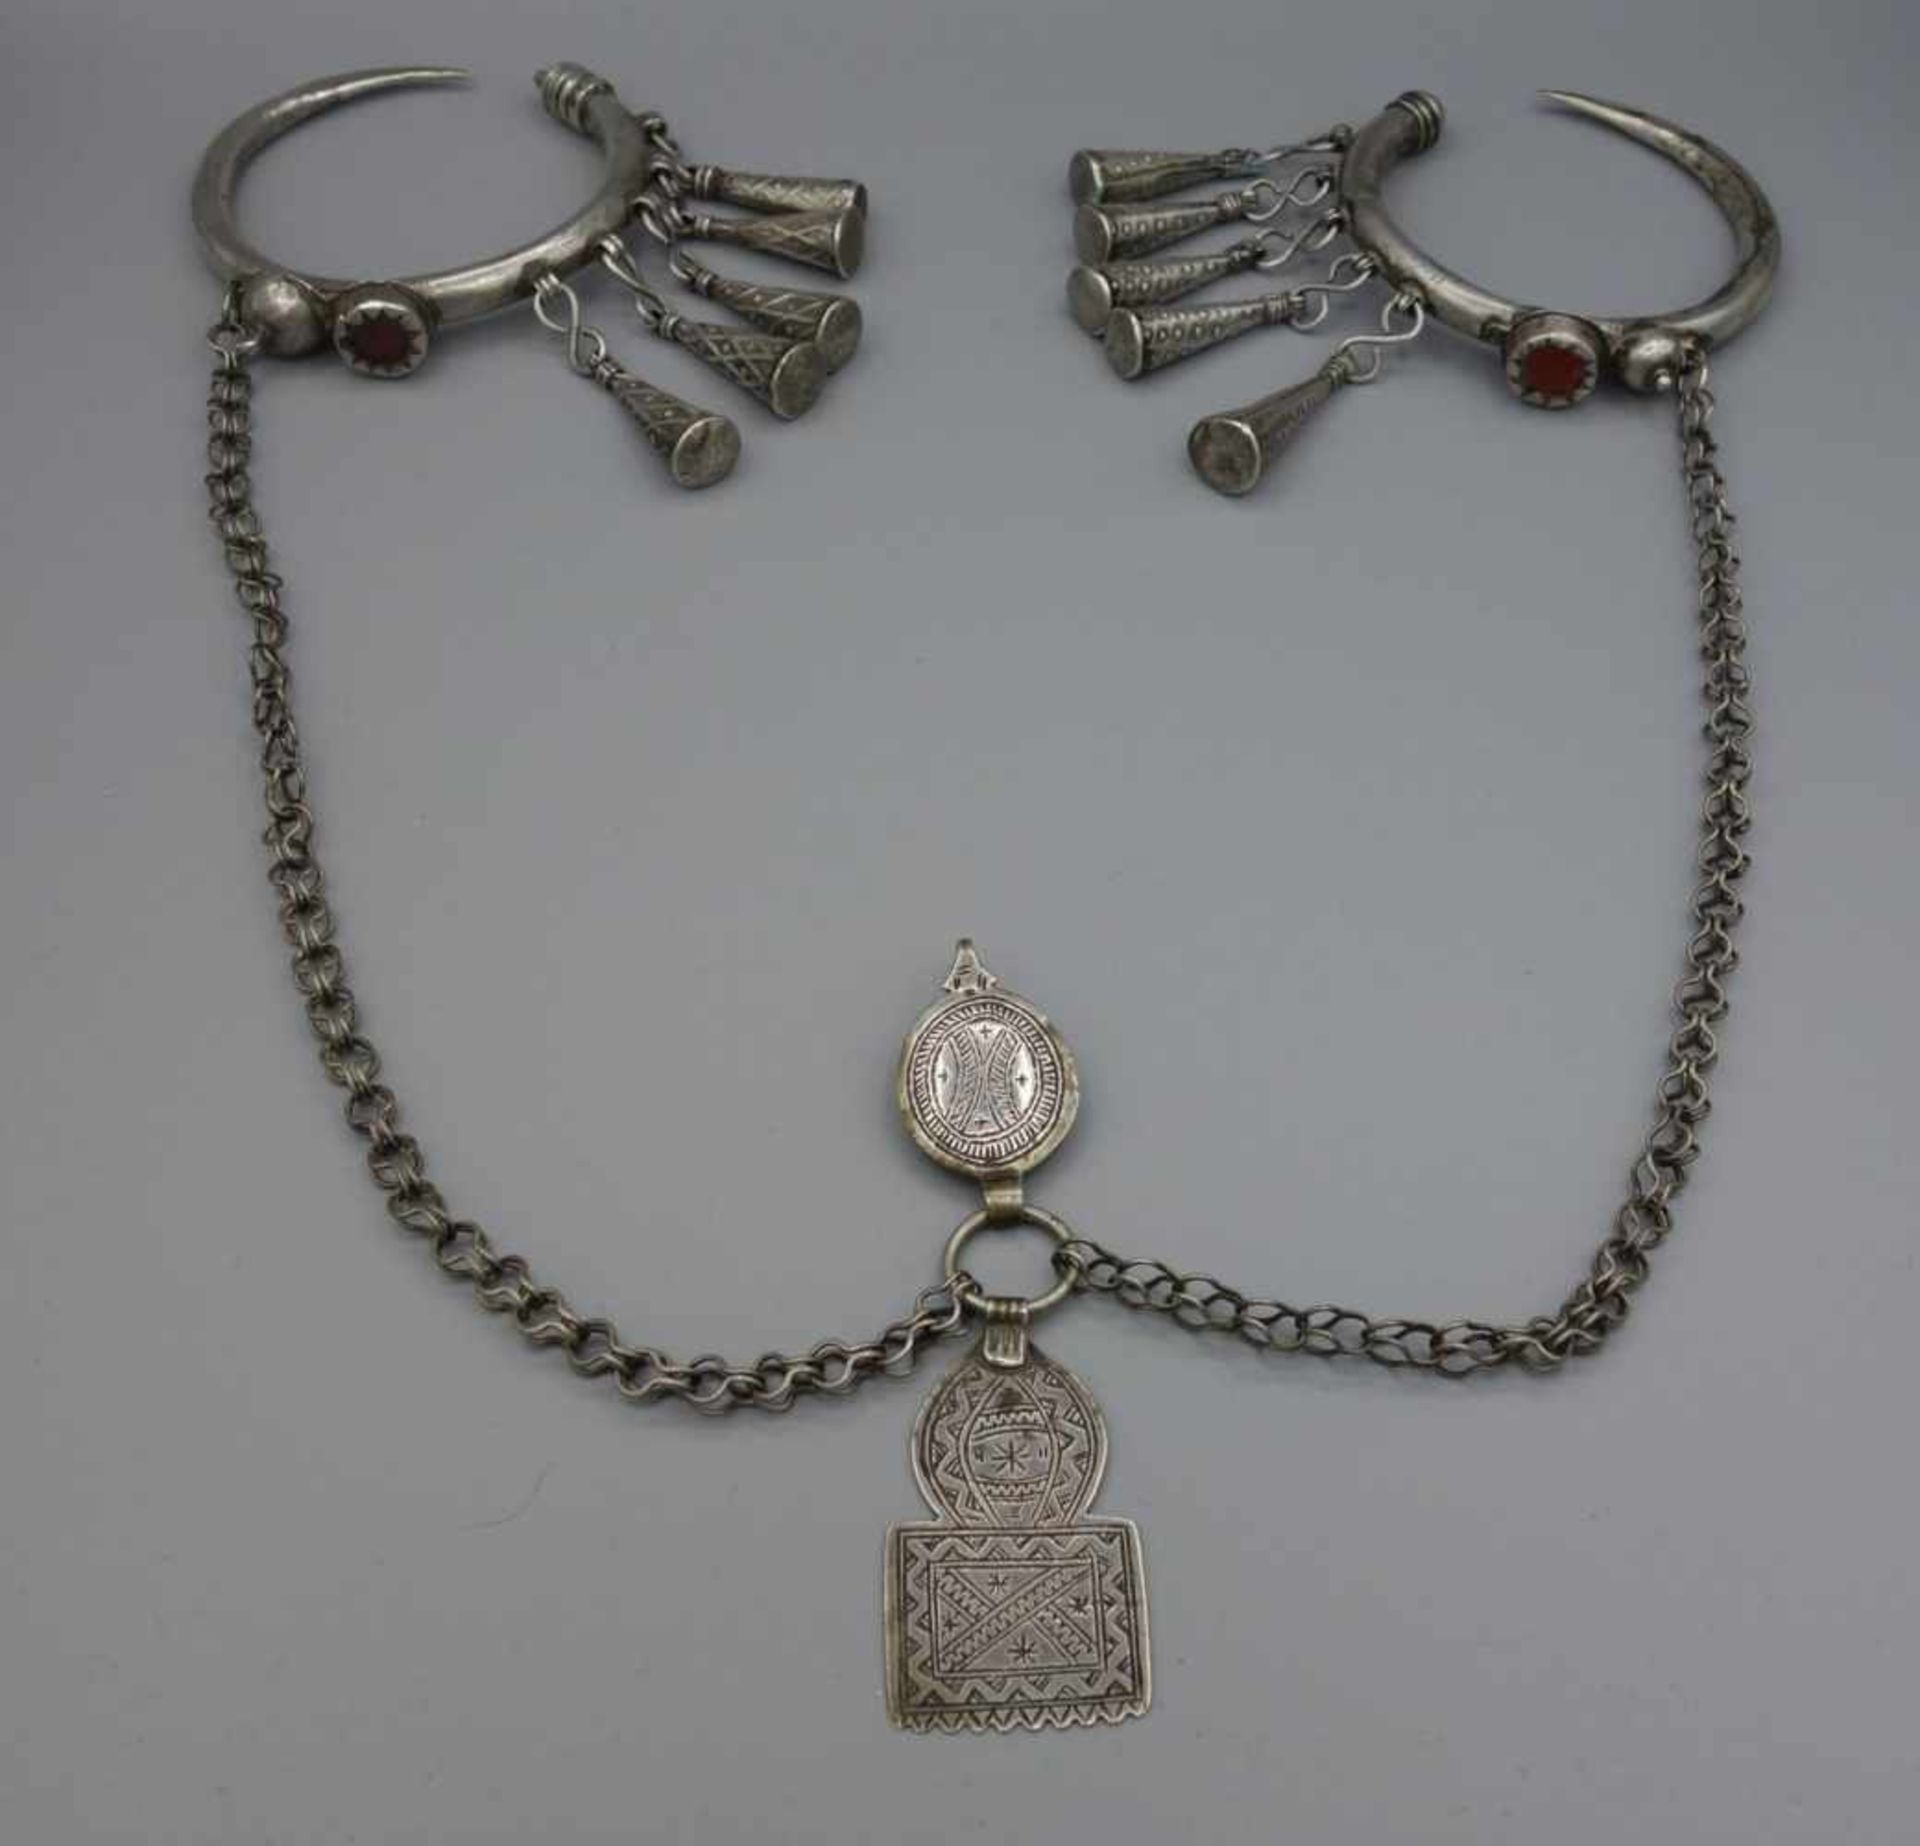 BERBER-SCHMUCK: FIBELN UND KETTE, Marokko. Silber, Gewicht: 145 g. Kette mit Fibeln. In der Mitte - Image 2 of 3